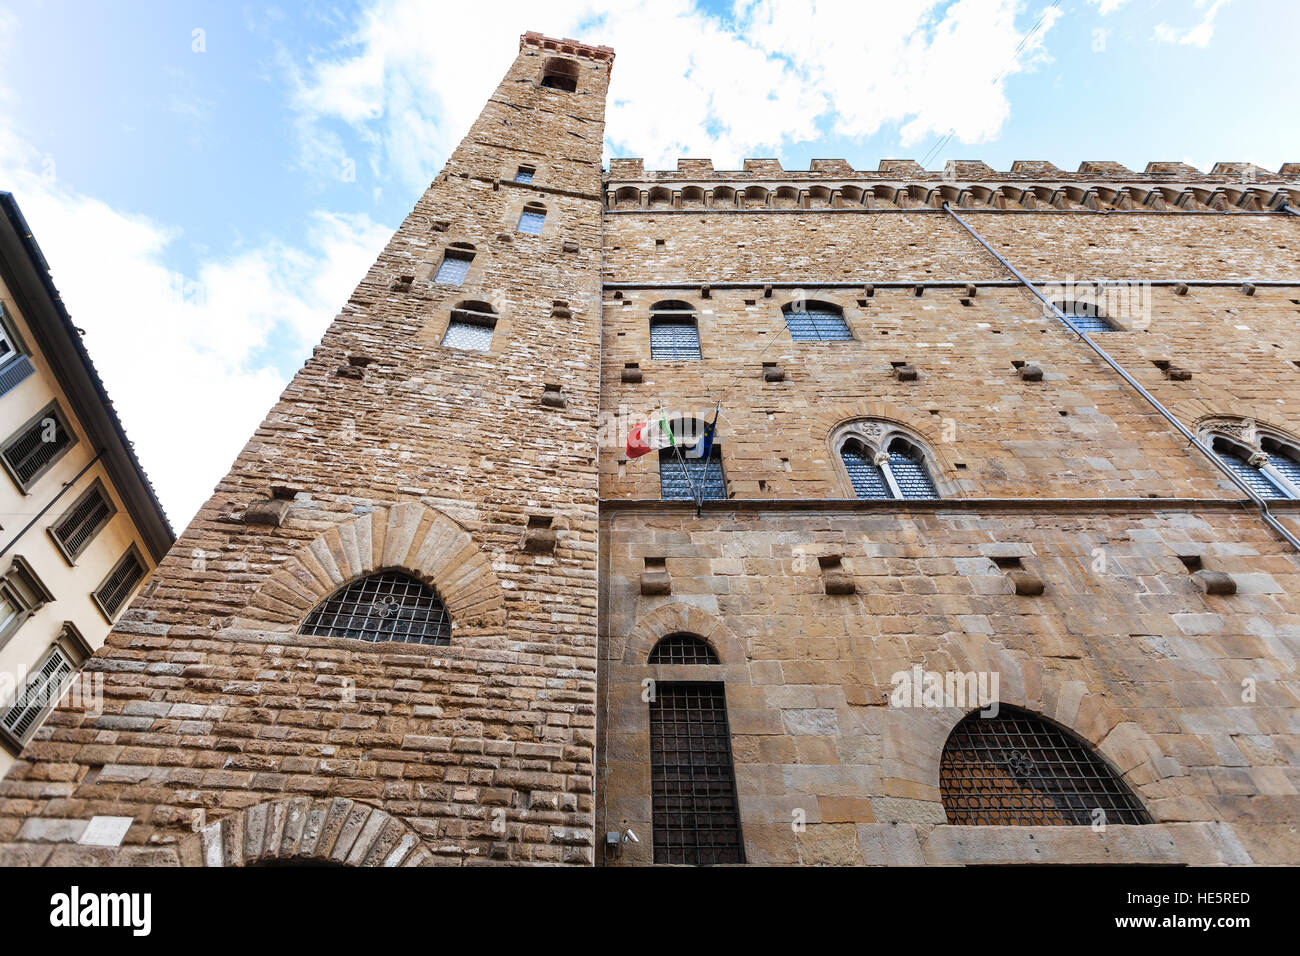 Reisen Sie nach Italien - Wand des Bargello Palast (Palazzo del Bargello, Palazzo del Popolo, der Menschen) in Florenz Zentrum Stockfoto